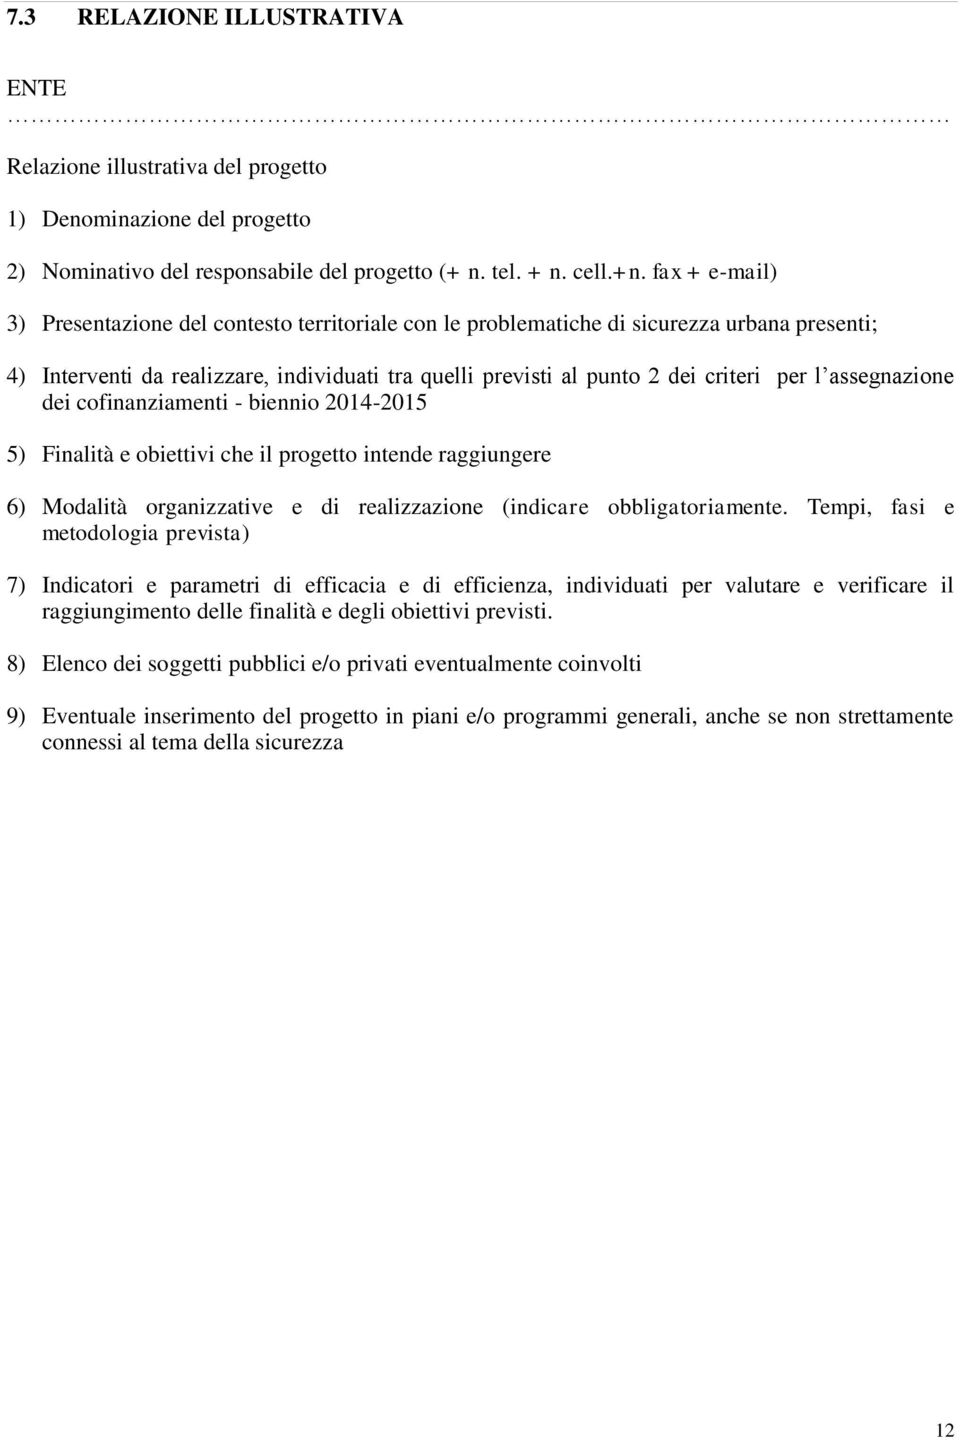 assegnazione dei cofinanziamenti - biennio 2014-2015 5) Finalità e obiettivi che il progetto intende raggiungere 6) Modalità organizzative e di realizzazione (indicare obbligatoriamente.